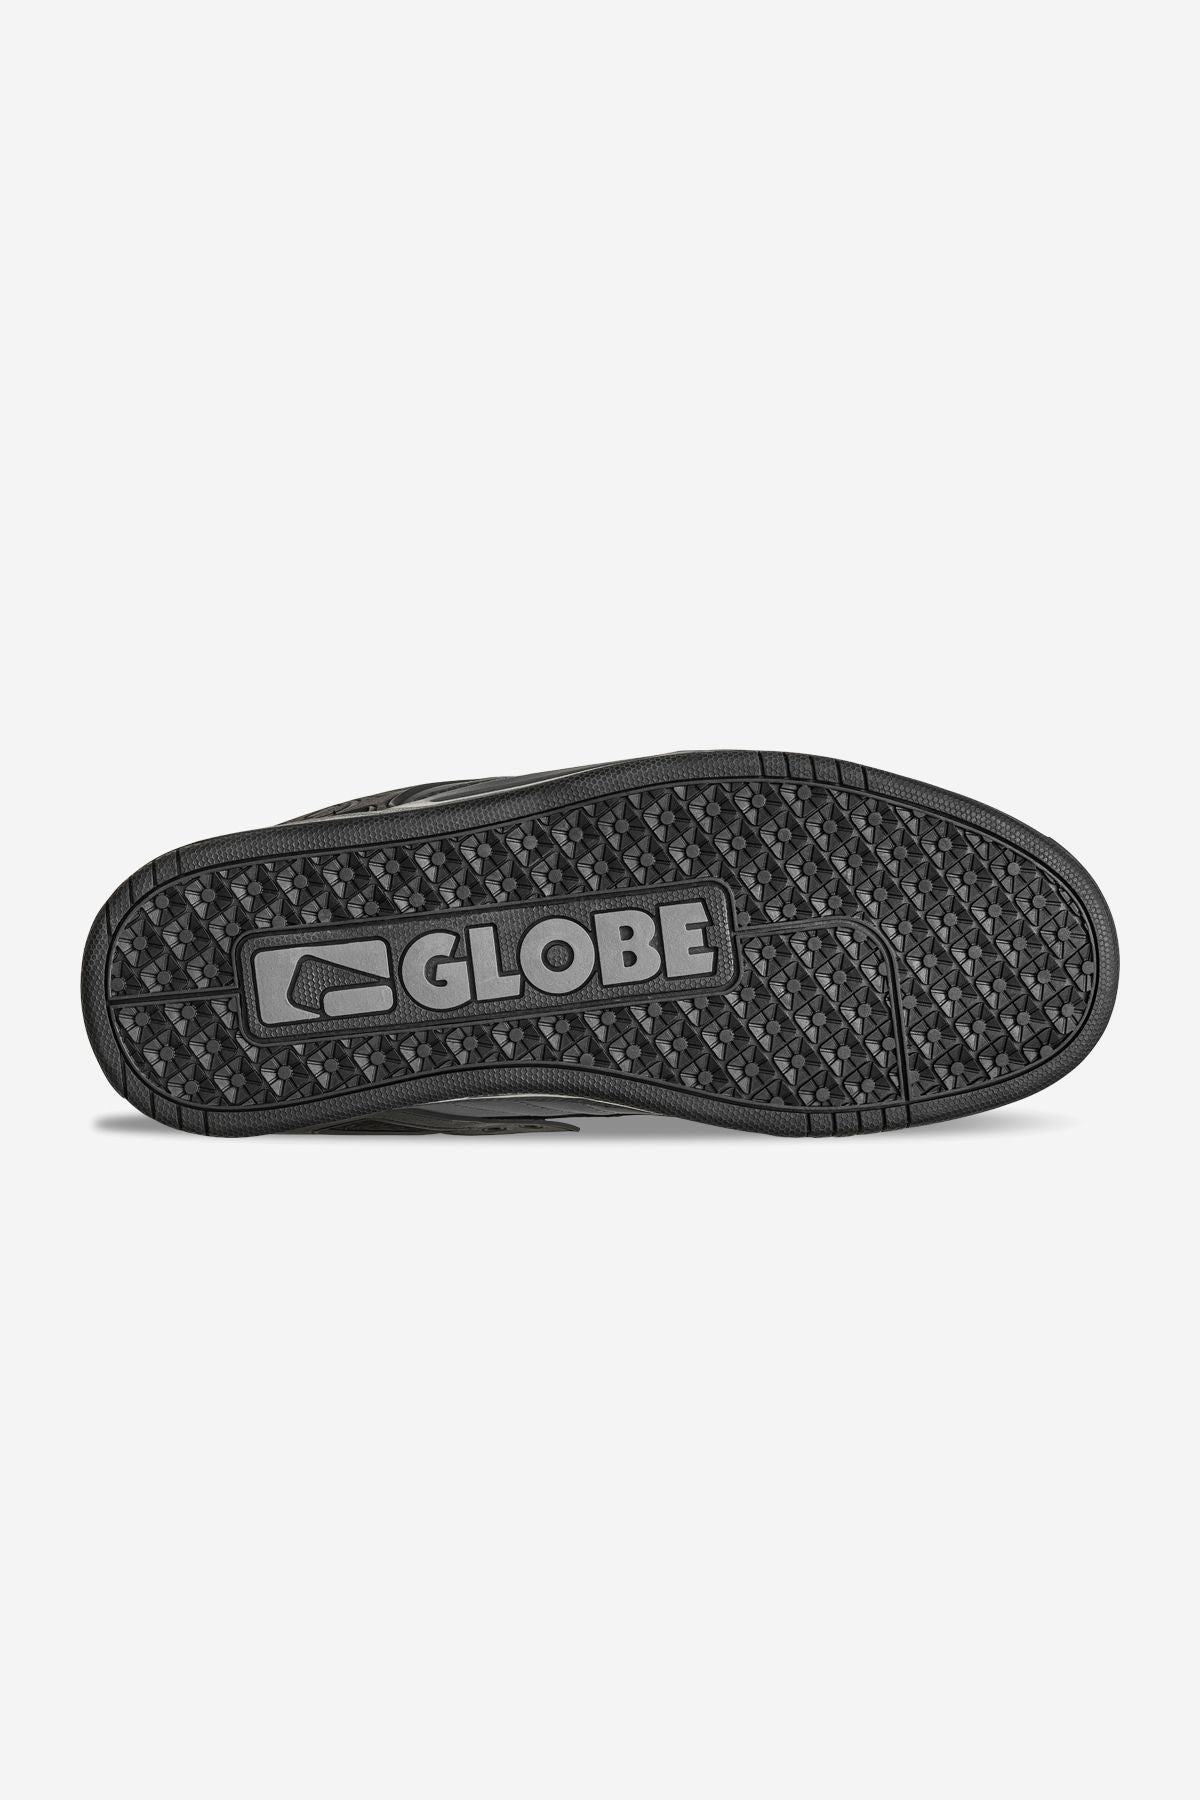 Globe - Tilt - Dark Shadow/Phantom - skateboard Sapatos